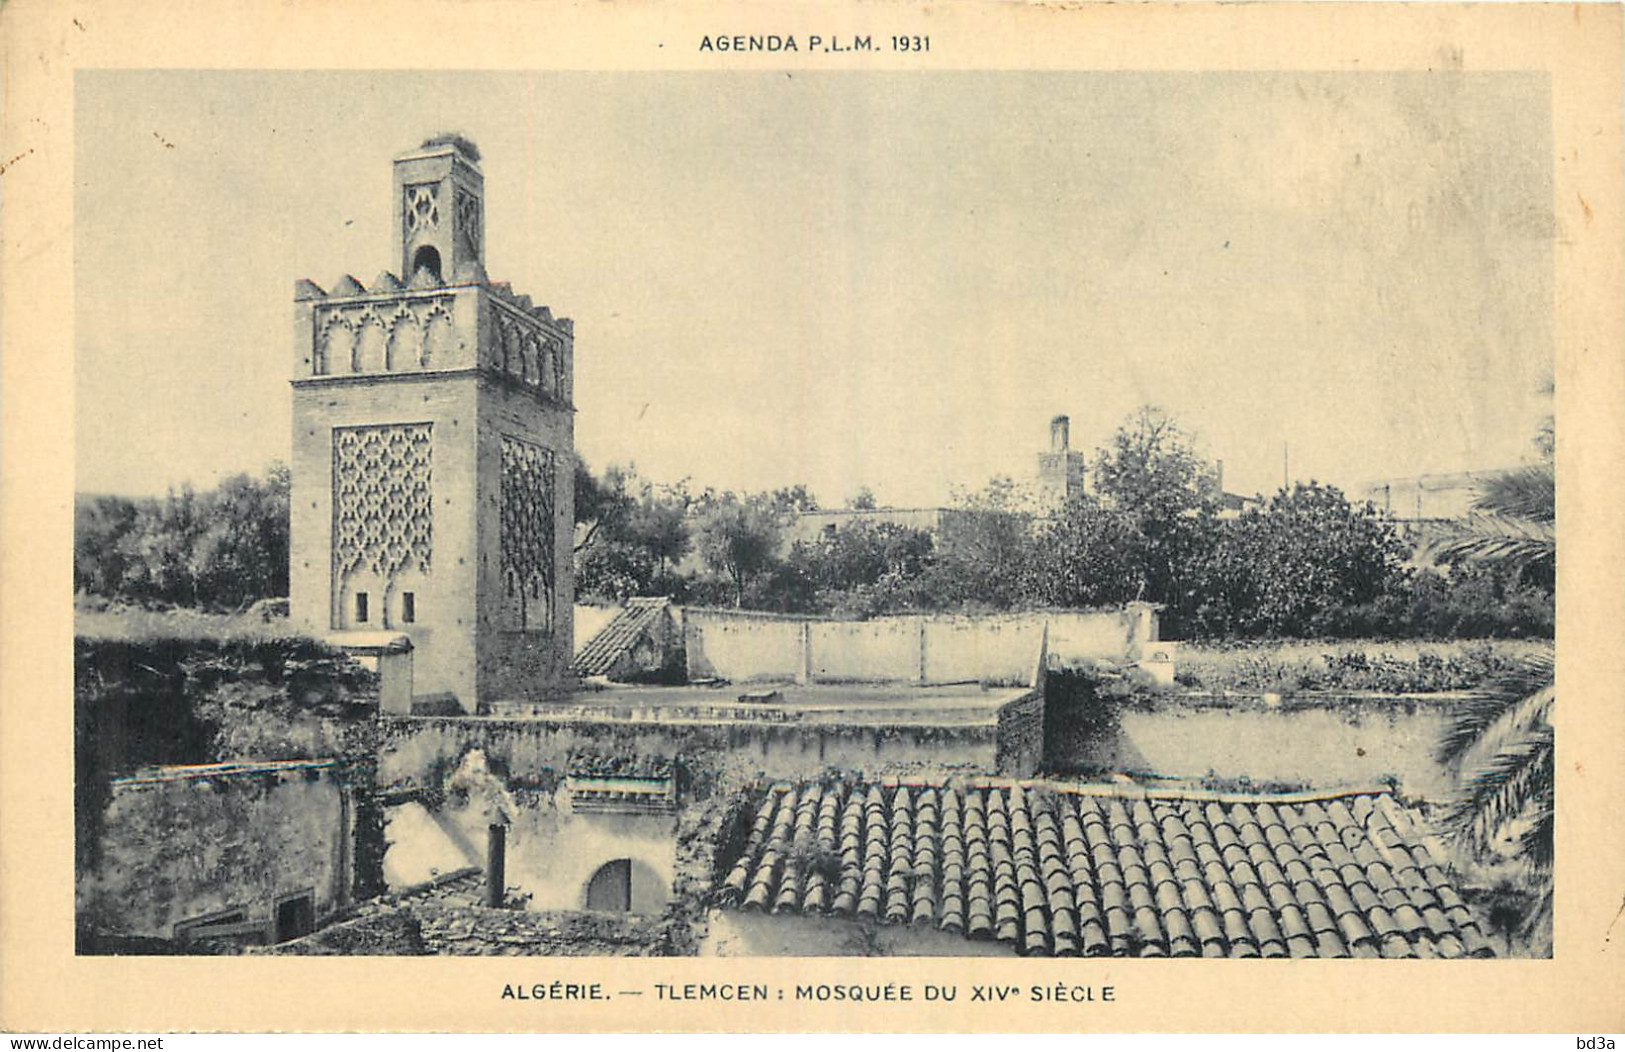 ALGERIE  TLEMCEN MOSQUEE DU XIVe SIECLE P.L.M. 1931 - Tlemcen